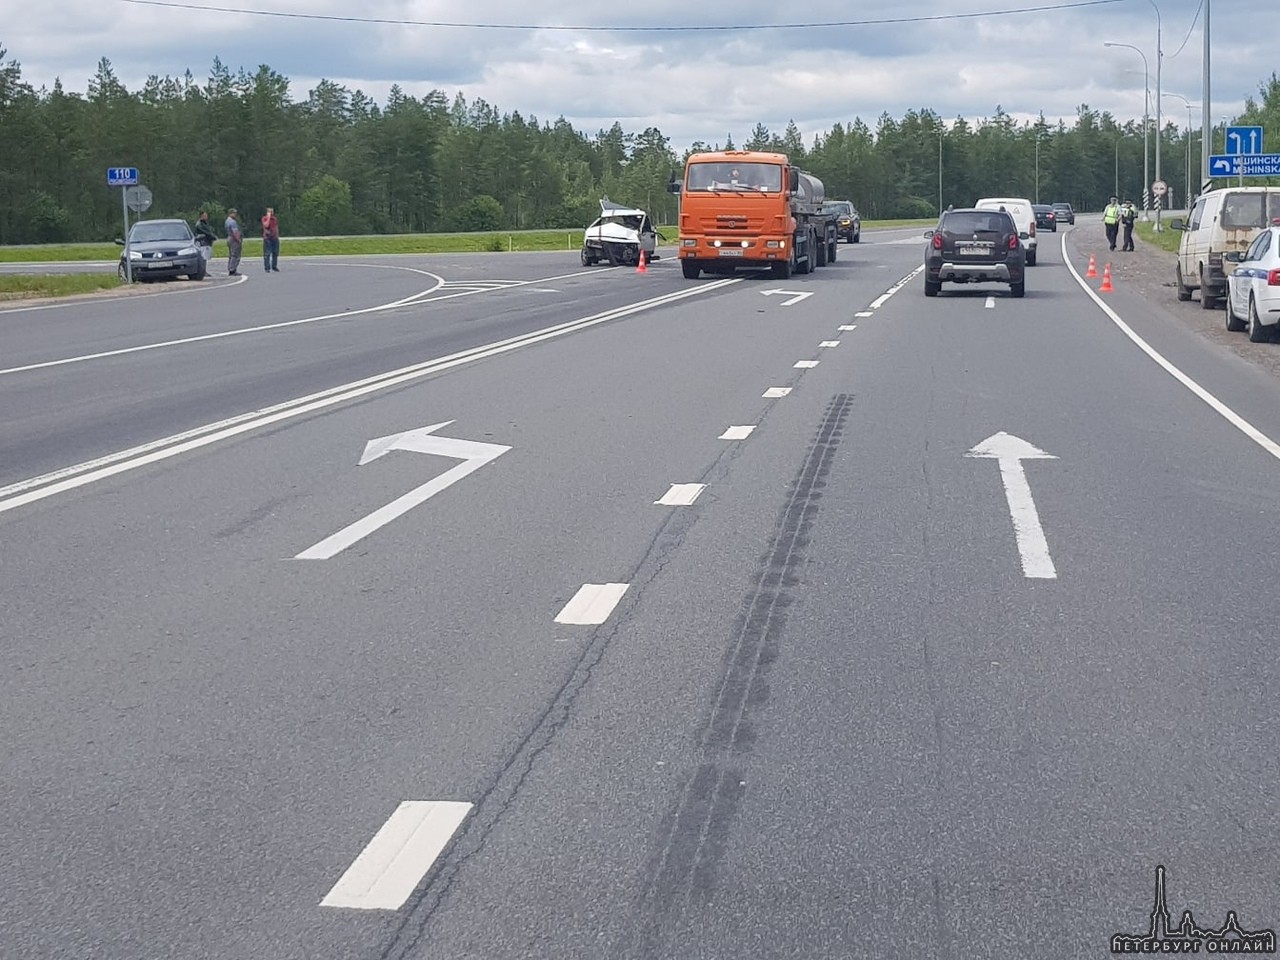 На автодороге Р-23 «Псков» рядом с поселком Мшинская, произошло серьезное ДТП с пострадавшими.